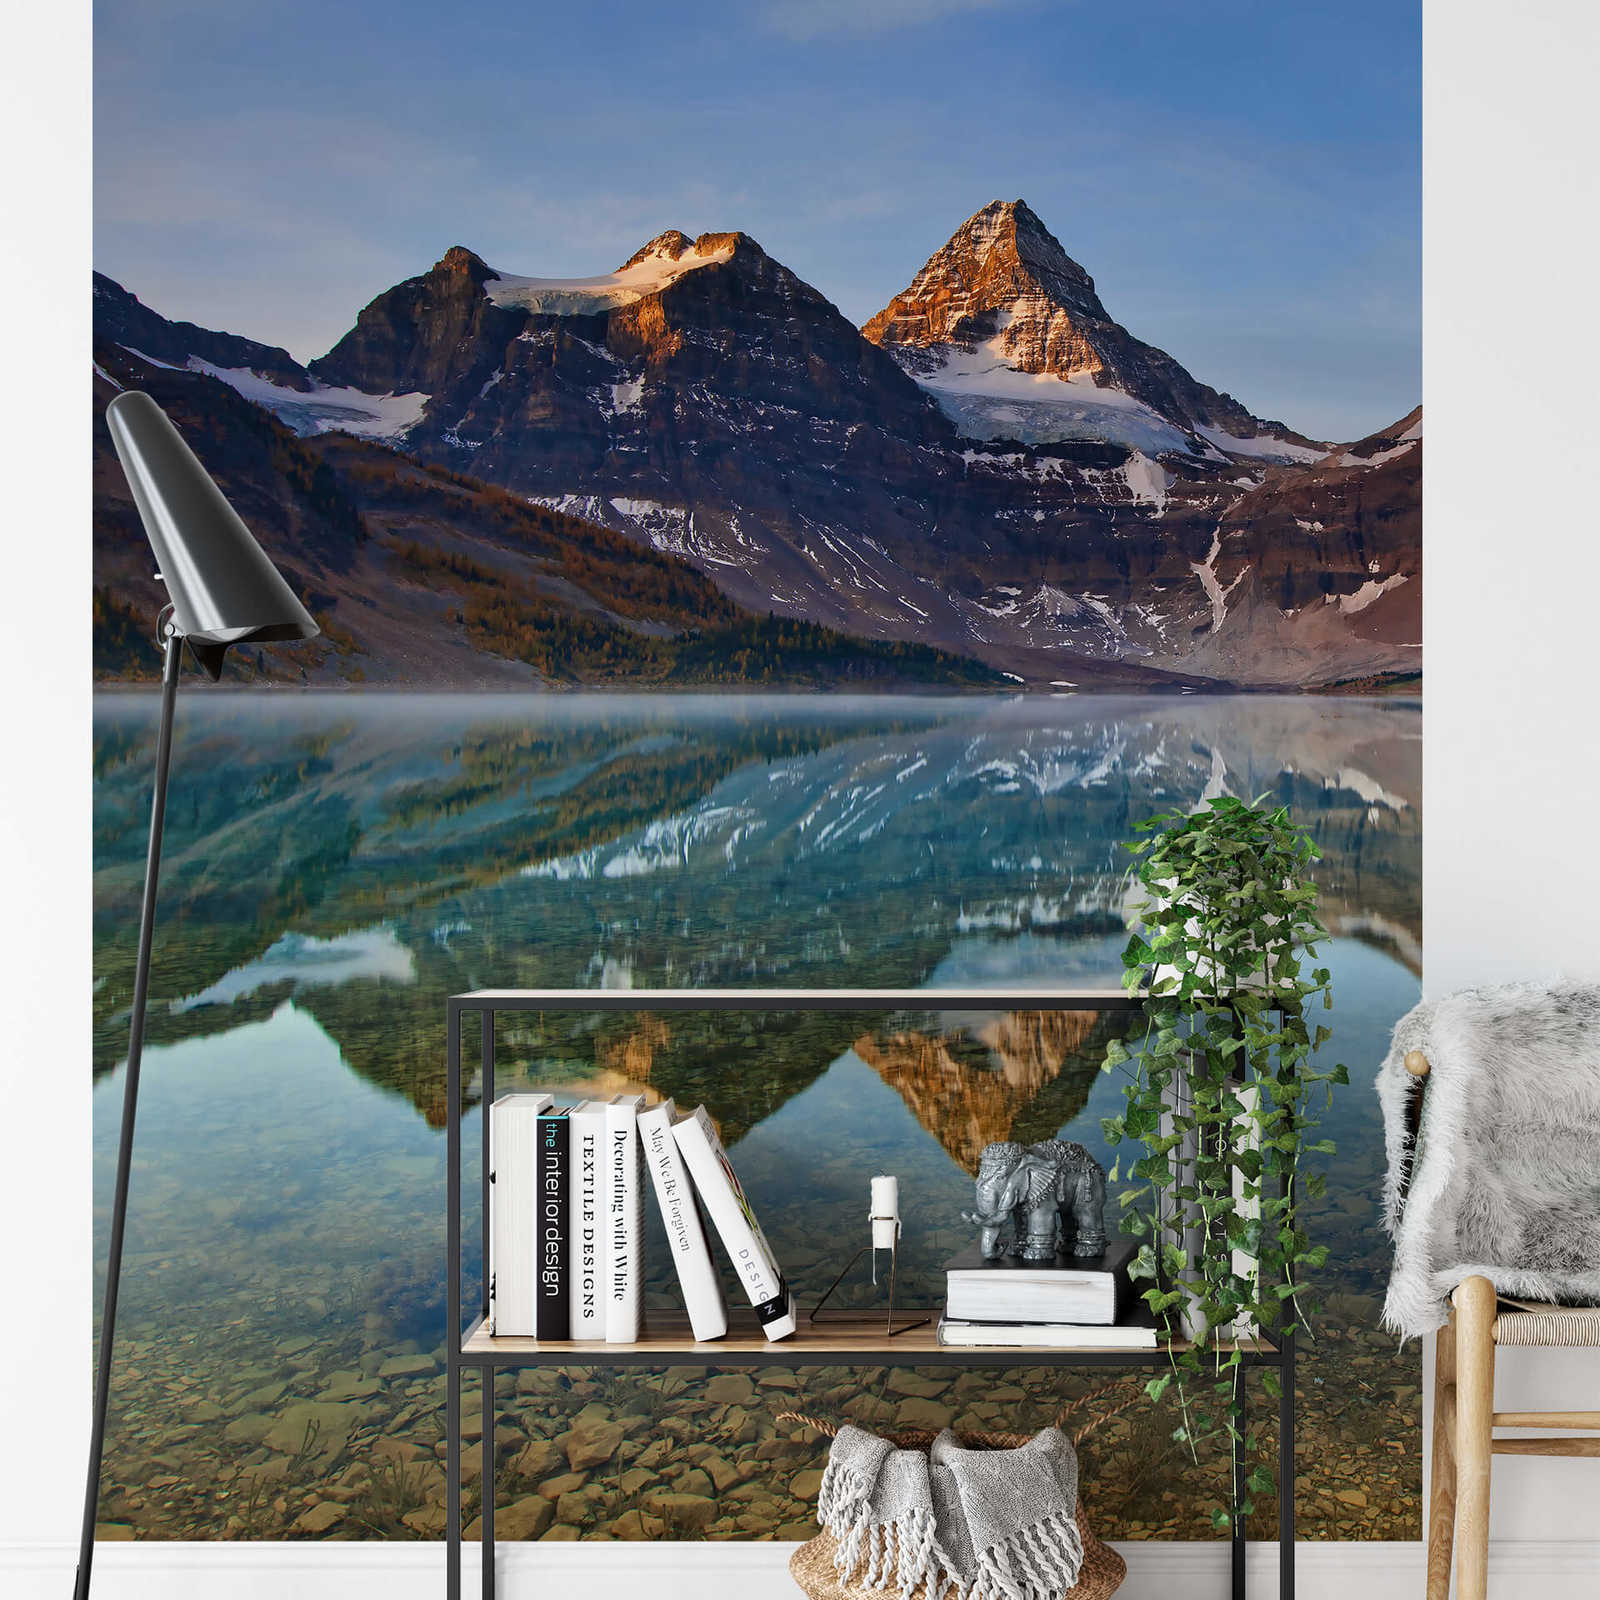             Papier peint panoramique lac et montagnes au Canada - marron, bleu, blanc
        